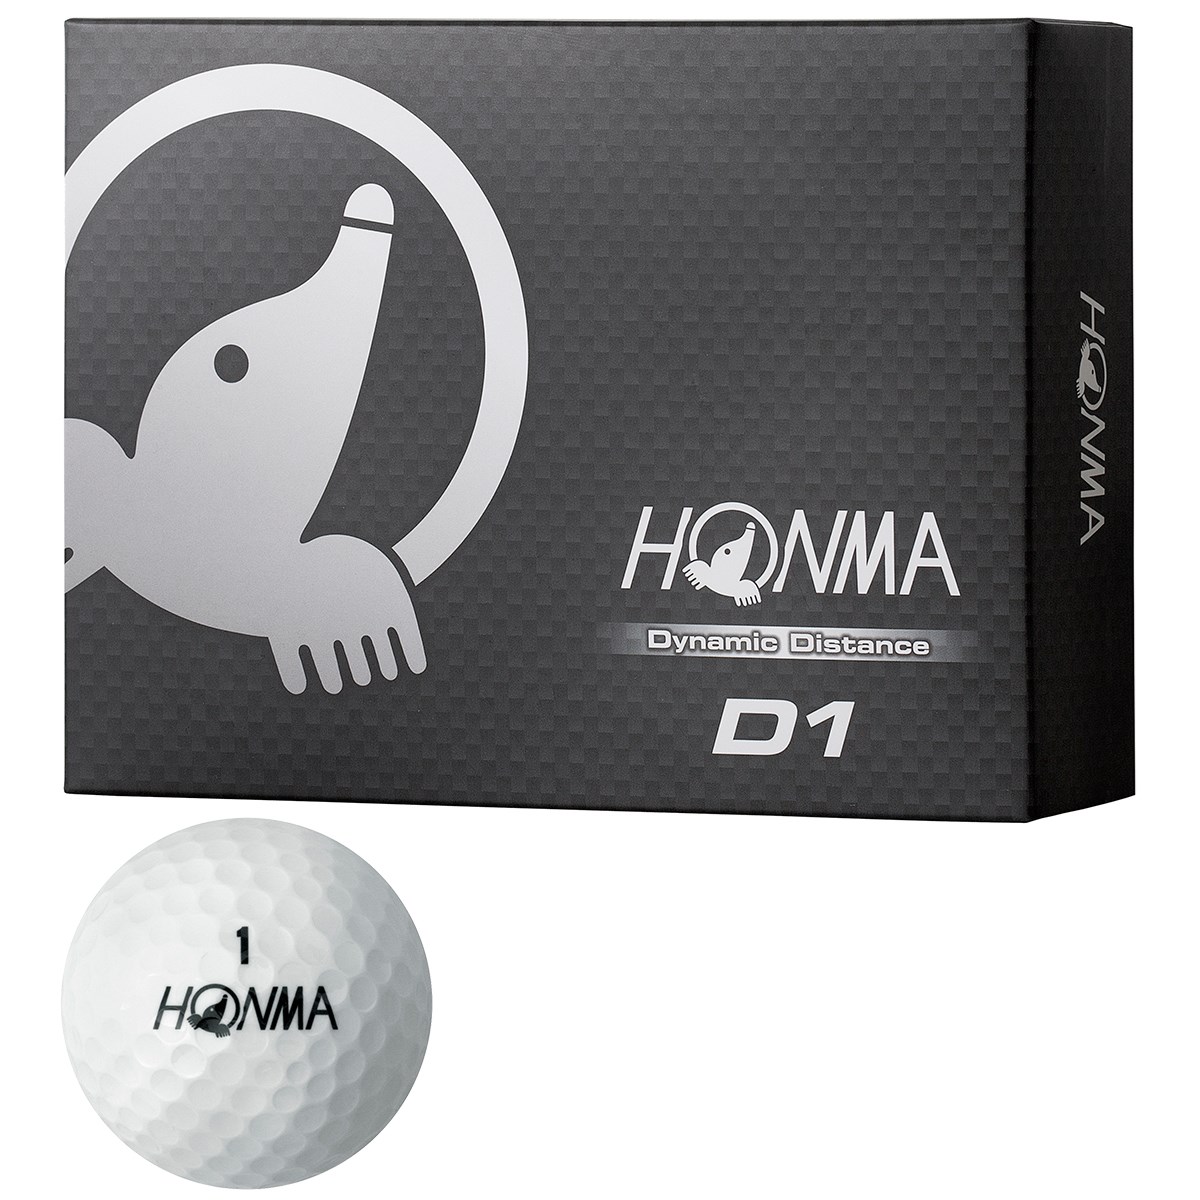 D1 ボール 16年モデル 本間ゴルフ Honma 通販 Gdoゴルフショップ